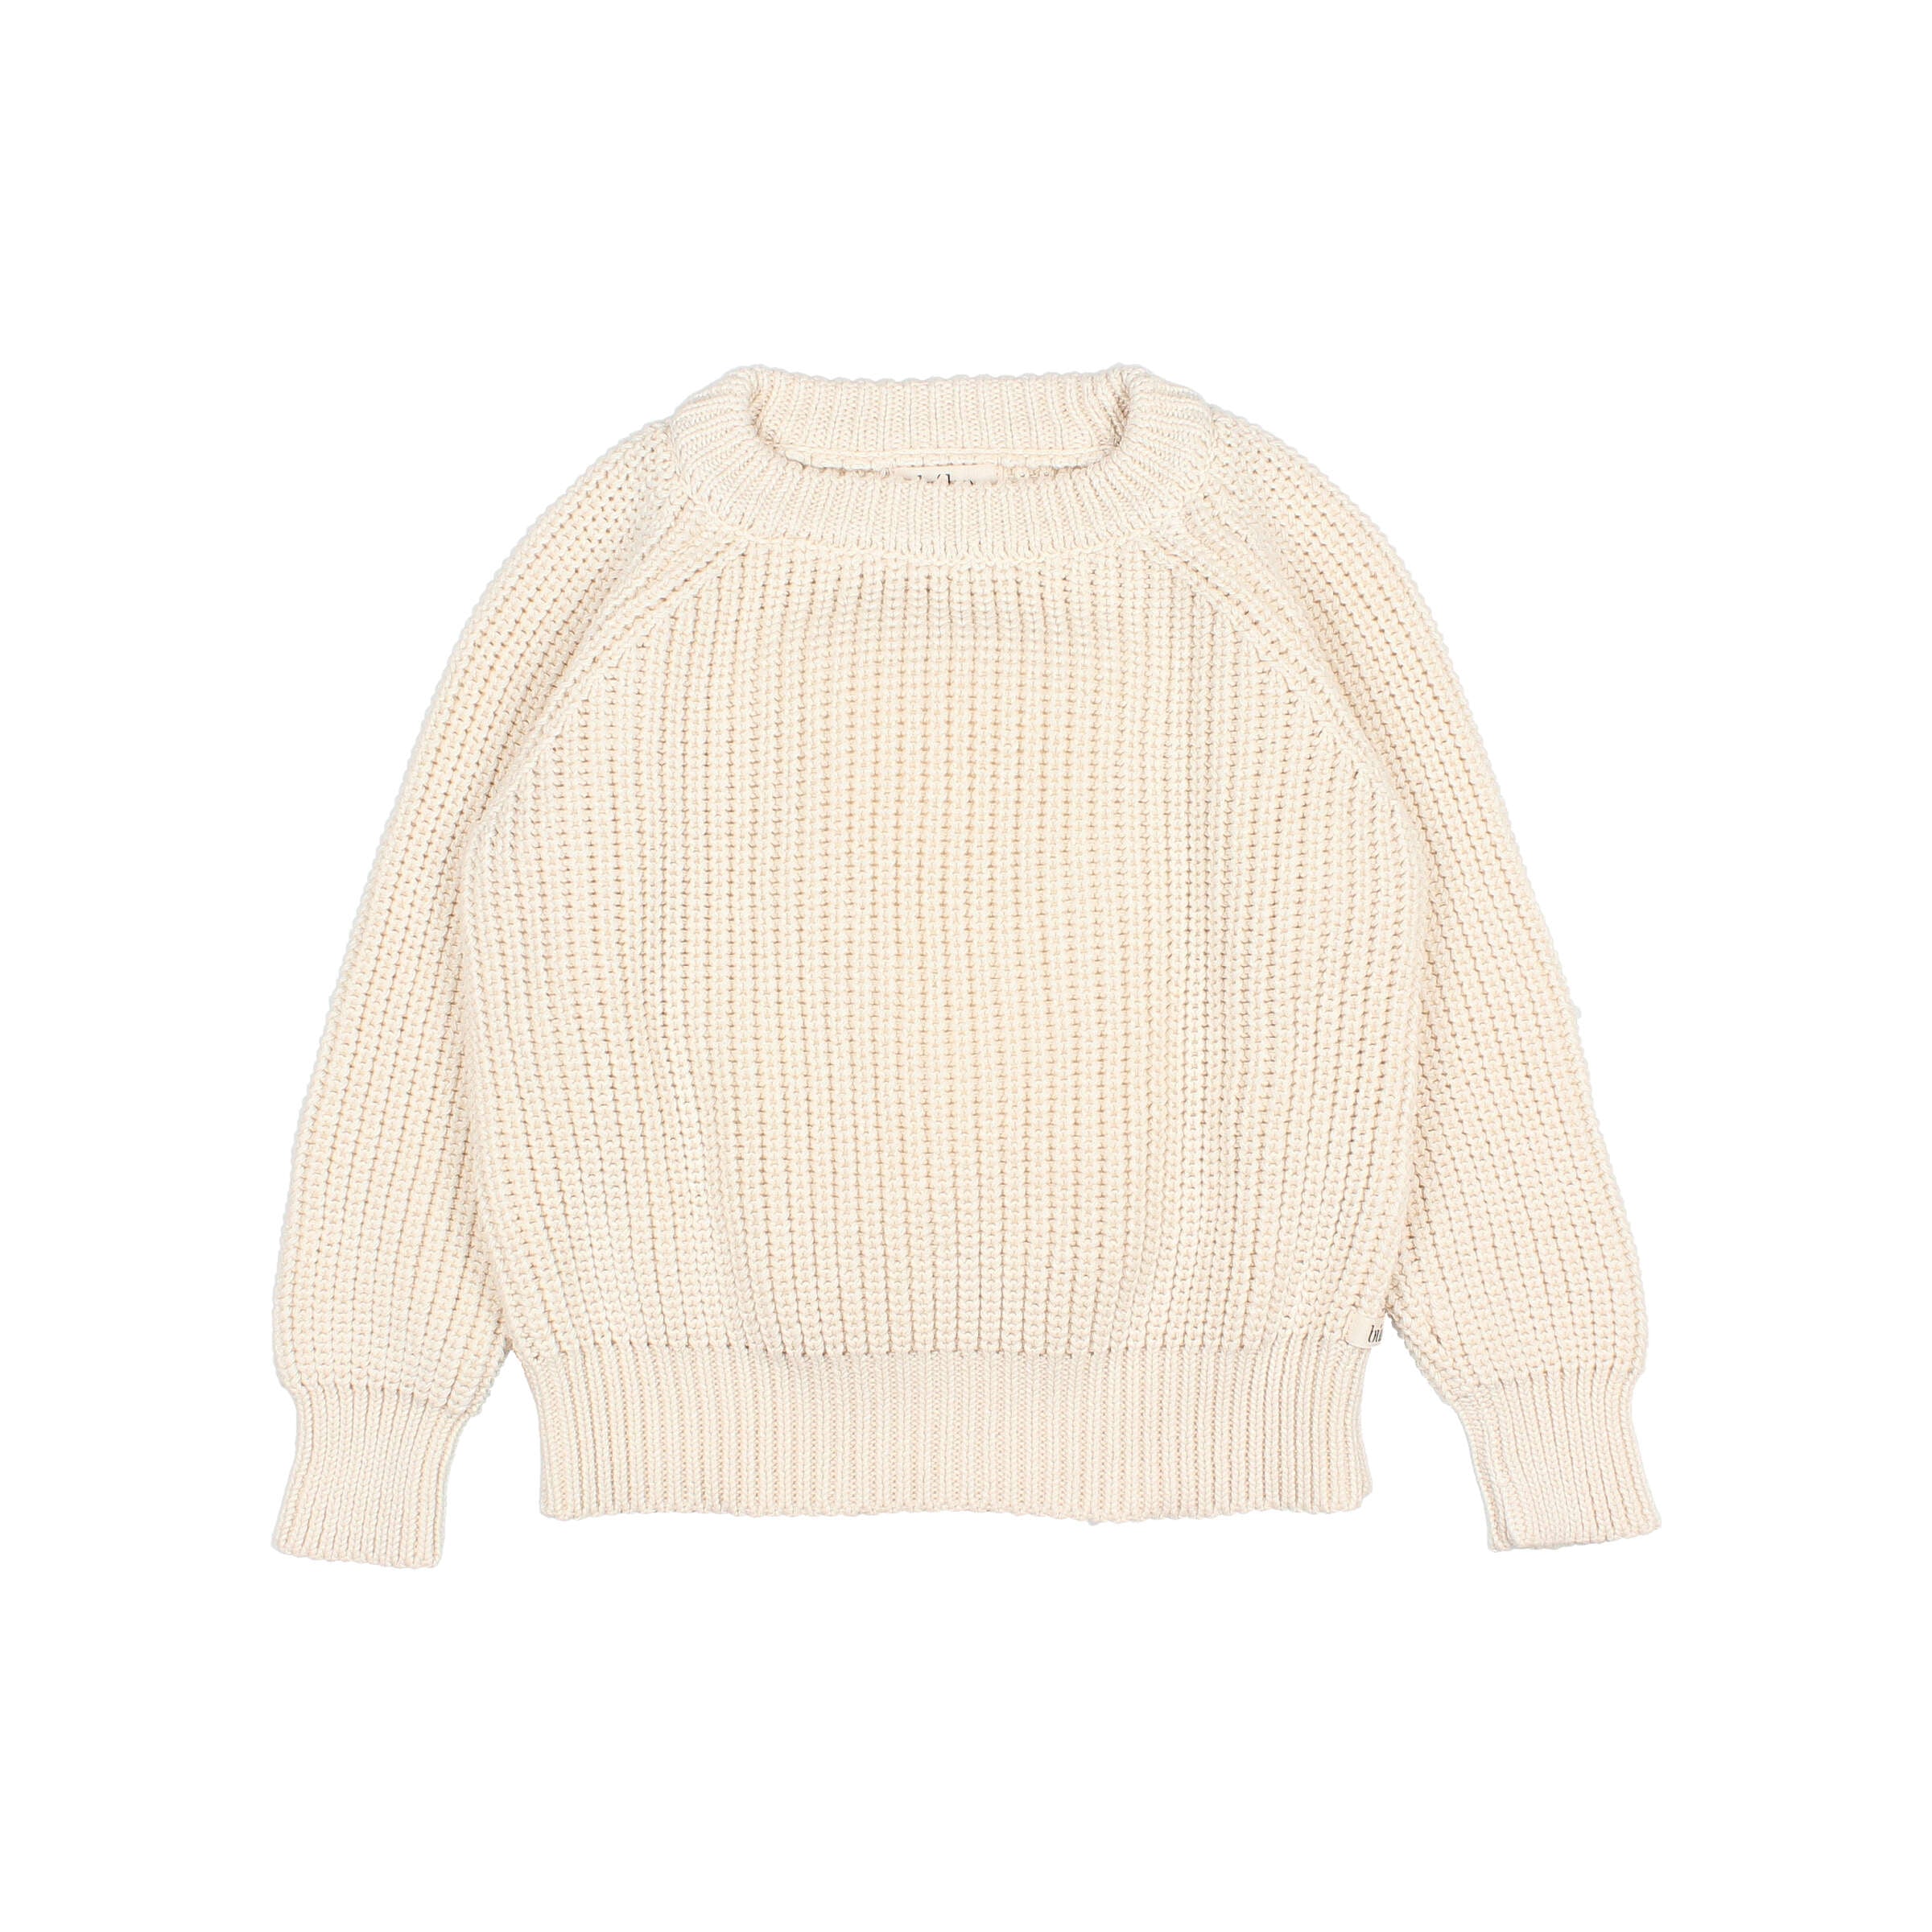 Buho - kids - cotton knit jumper - ecru